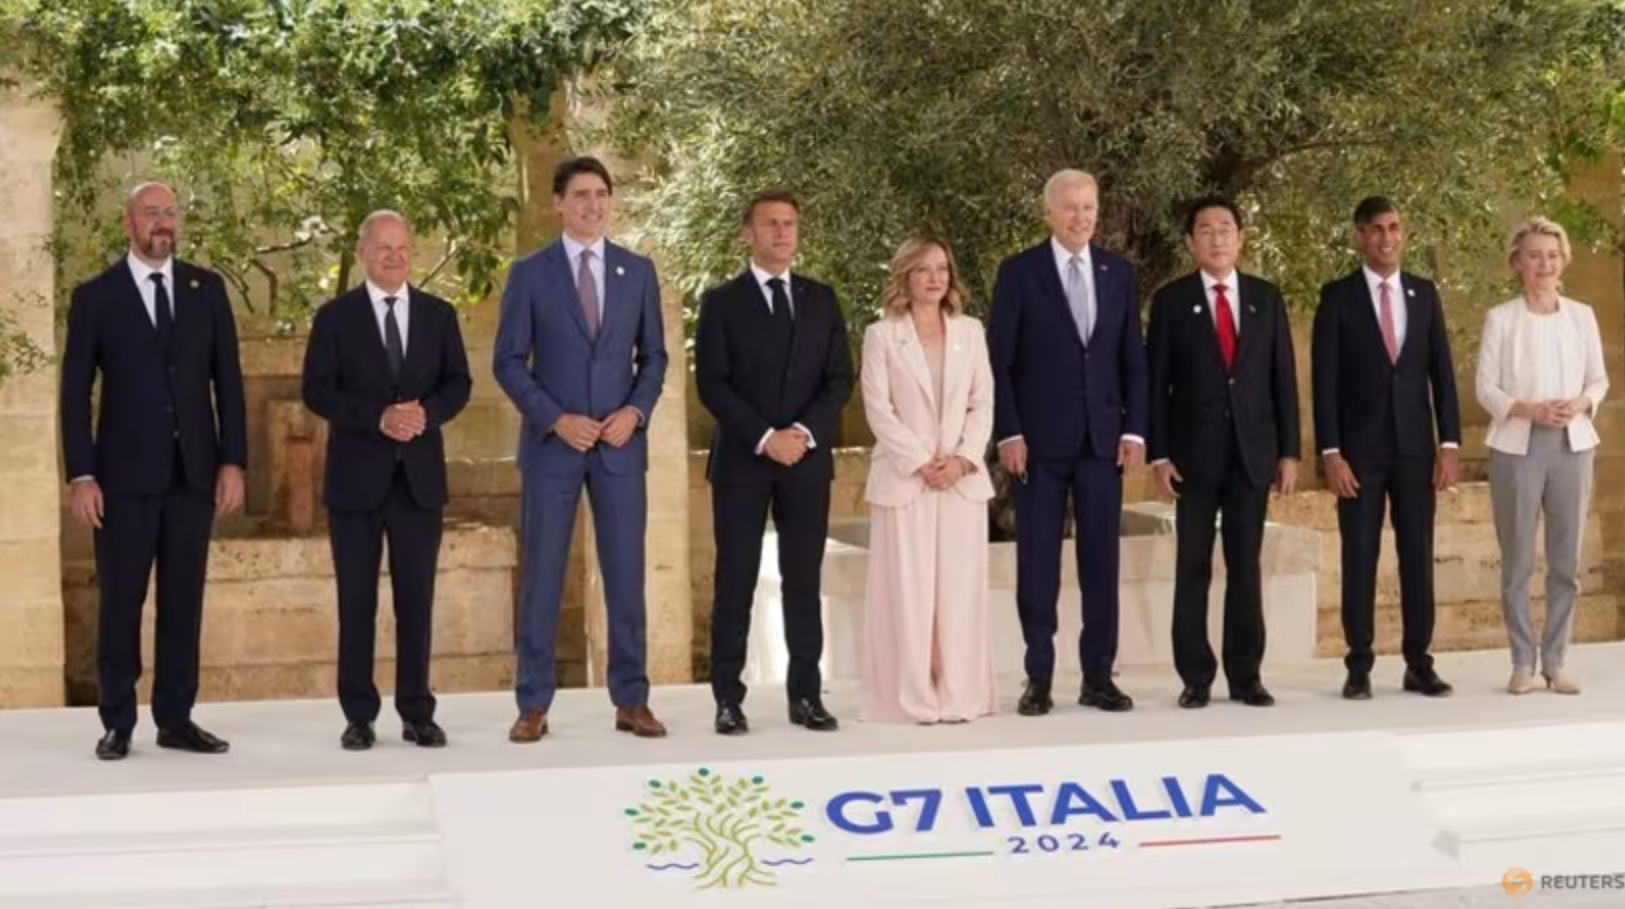 Thử thách nước sôi lửa bỏng nhất trong nhiều năm với dàn lãnh đạo G7 2024- Ảnh 1.